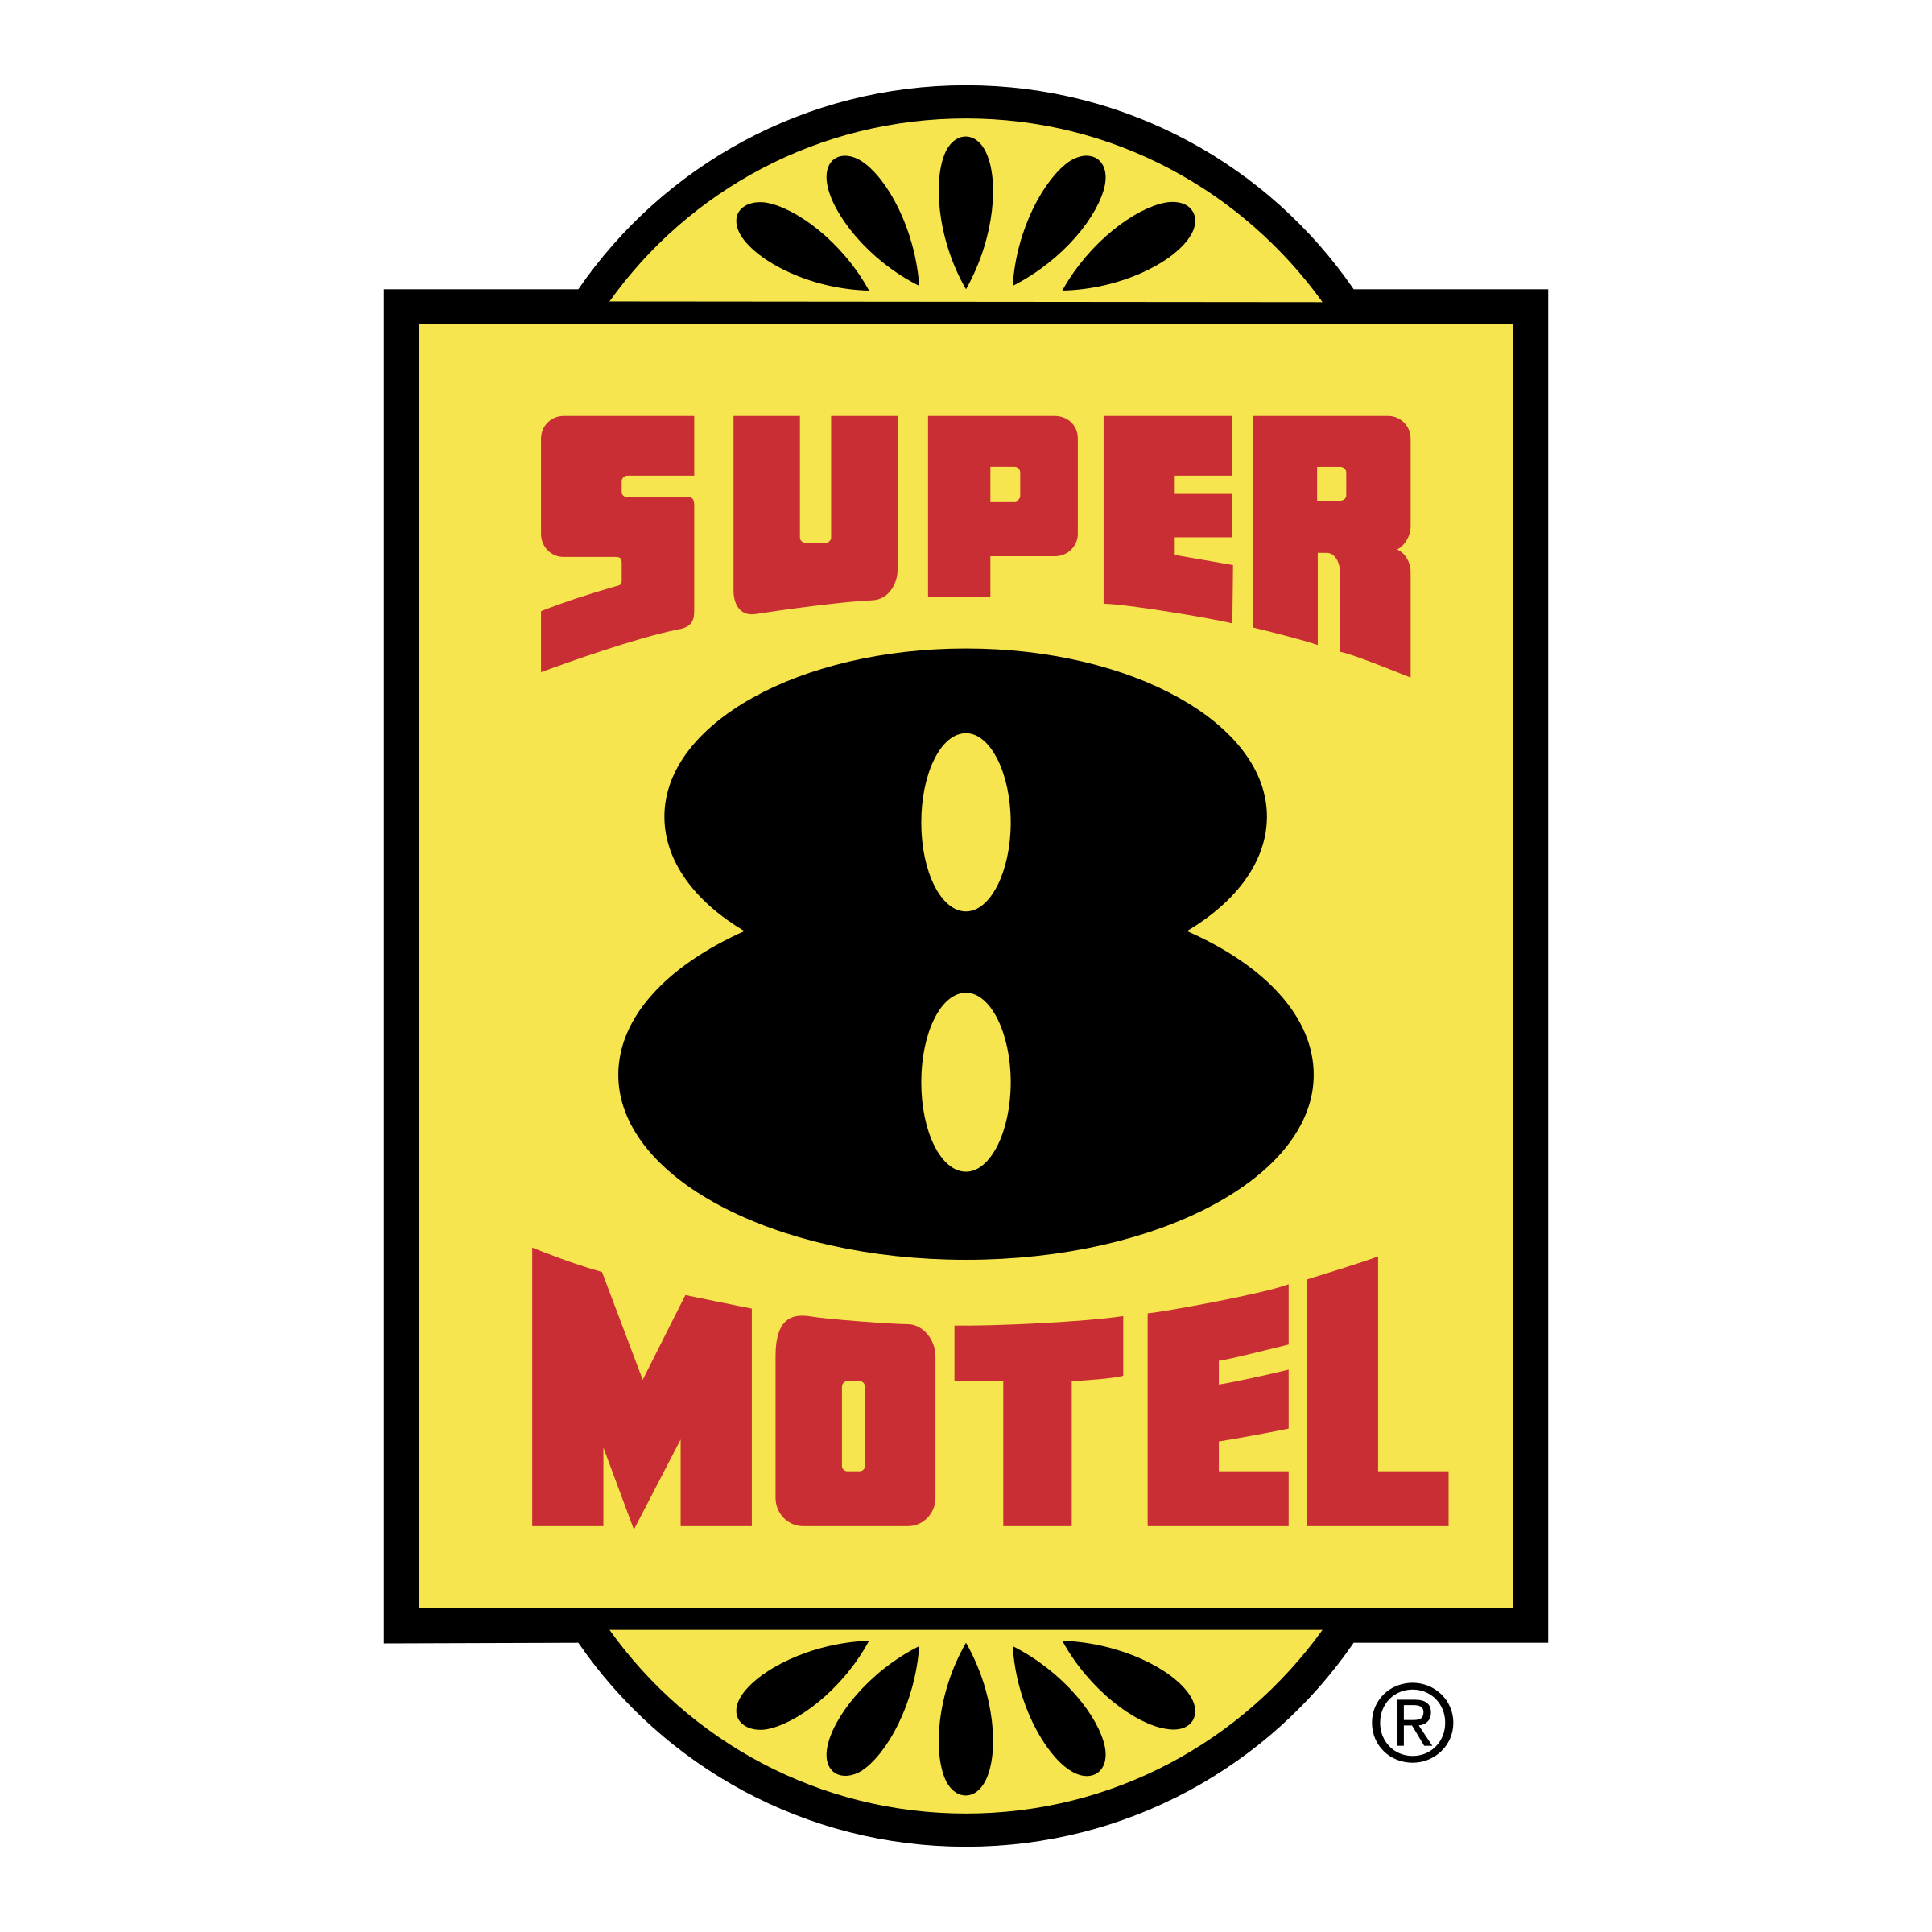 Super 8 Logo - Super 8 Motel Logo PNG Transparent & SVG Vector - Freebie Supply